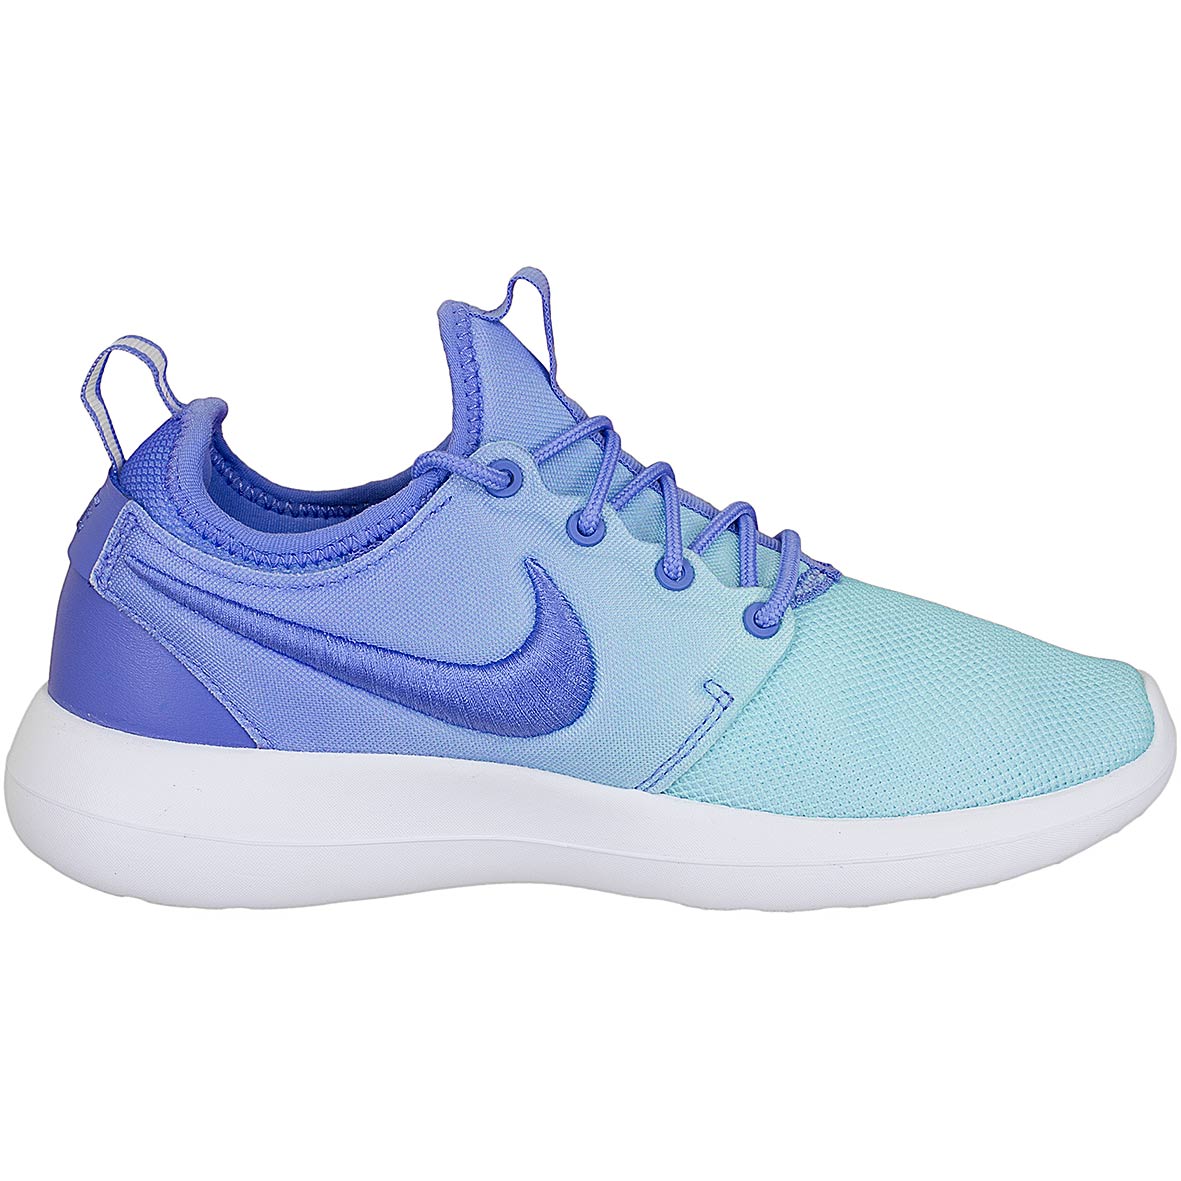 ☆ Nike Damen Sneaker Roshe Two BR blau/blau - hier bestellen!